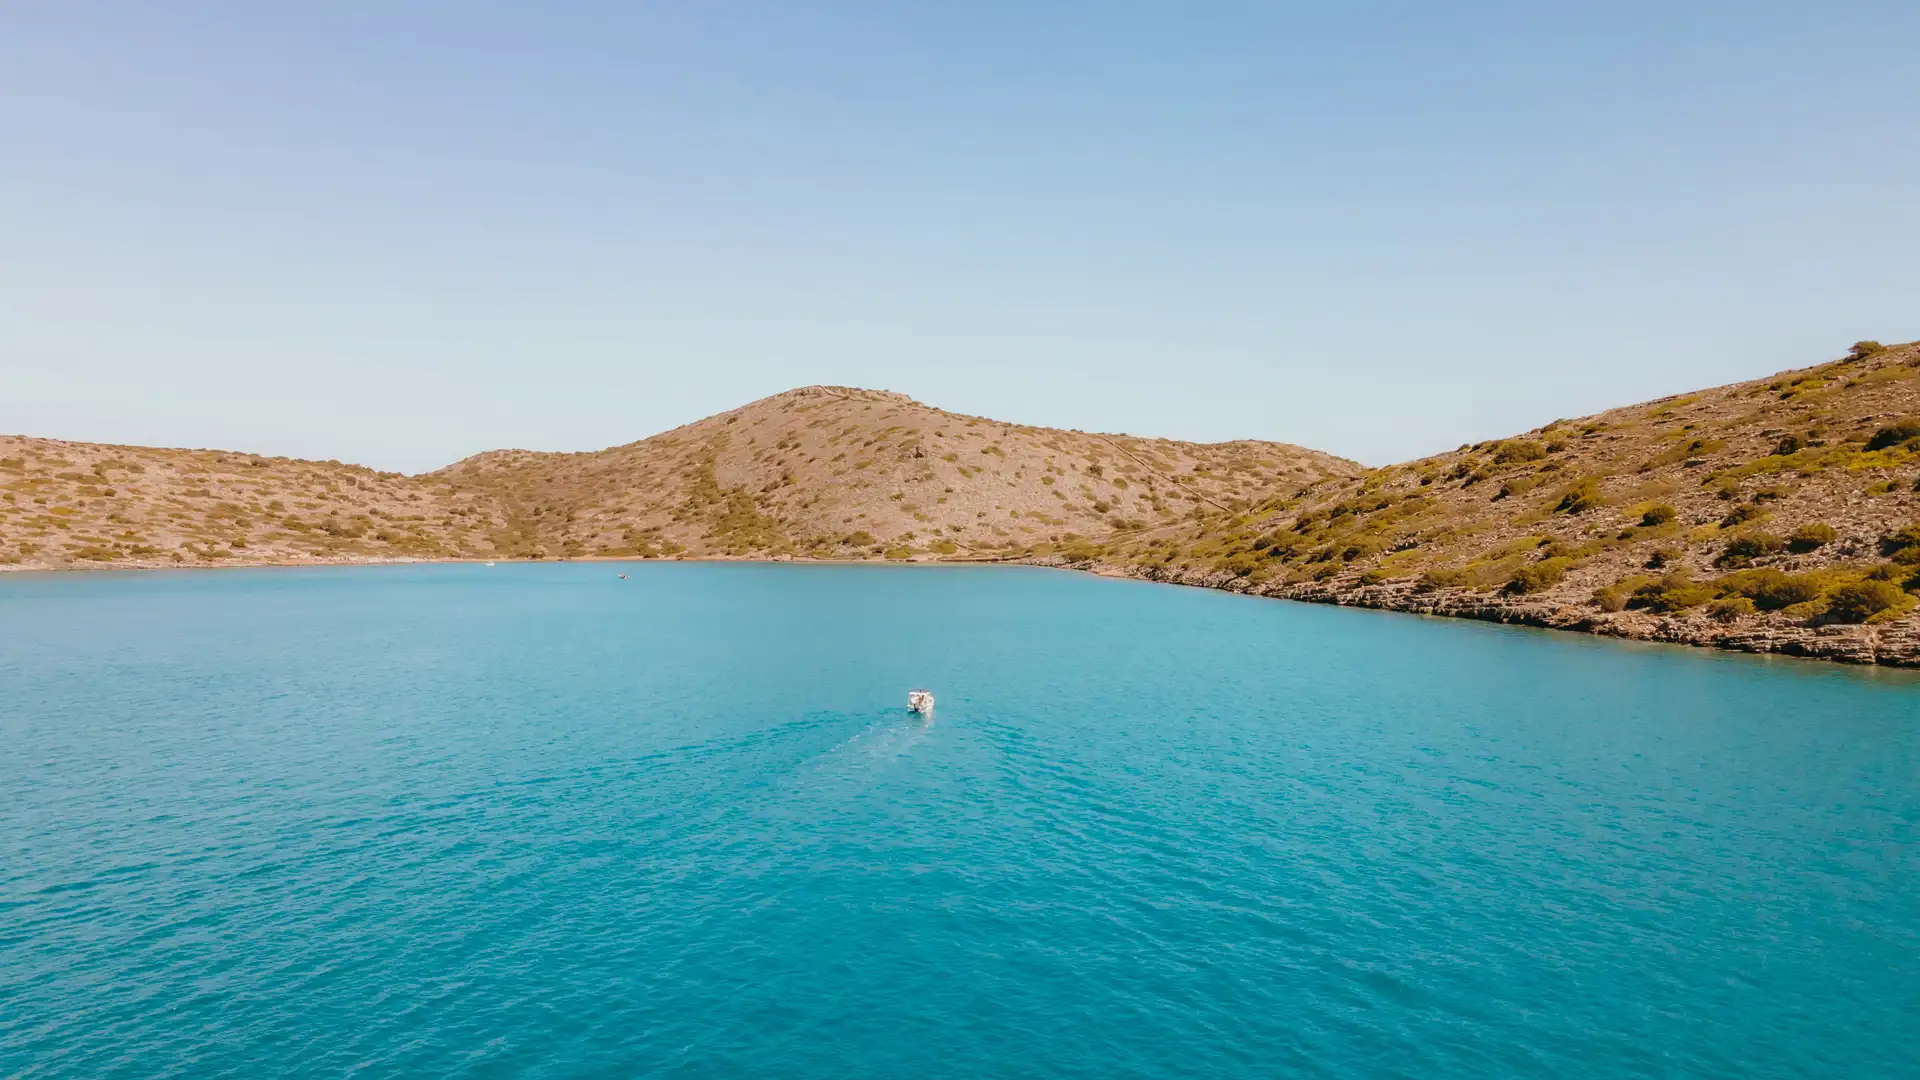 Location de bateau sans permis dans la baie d'elounda en Crète